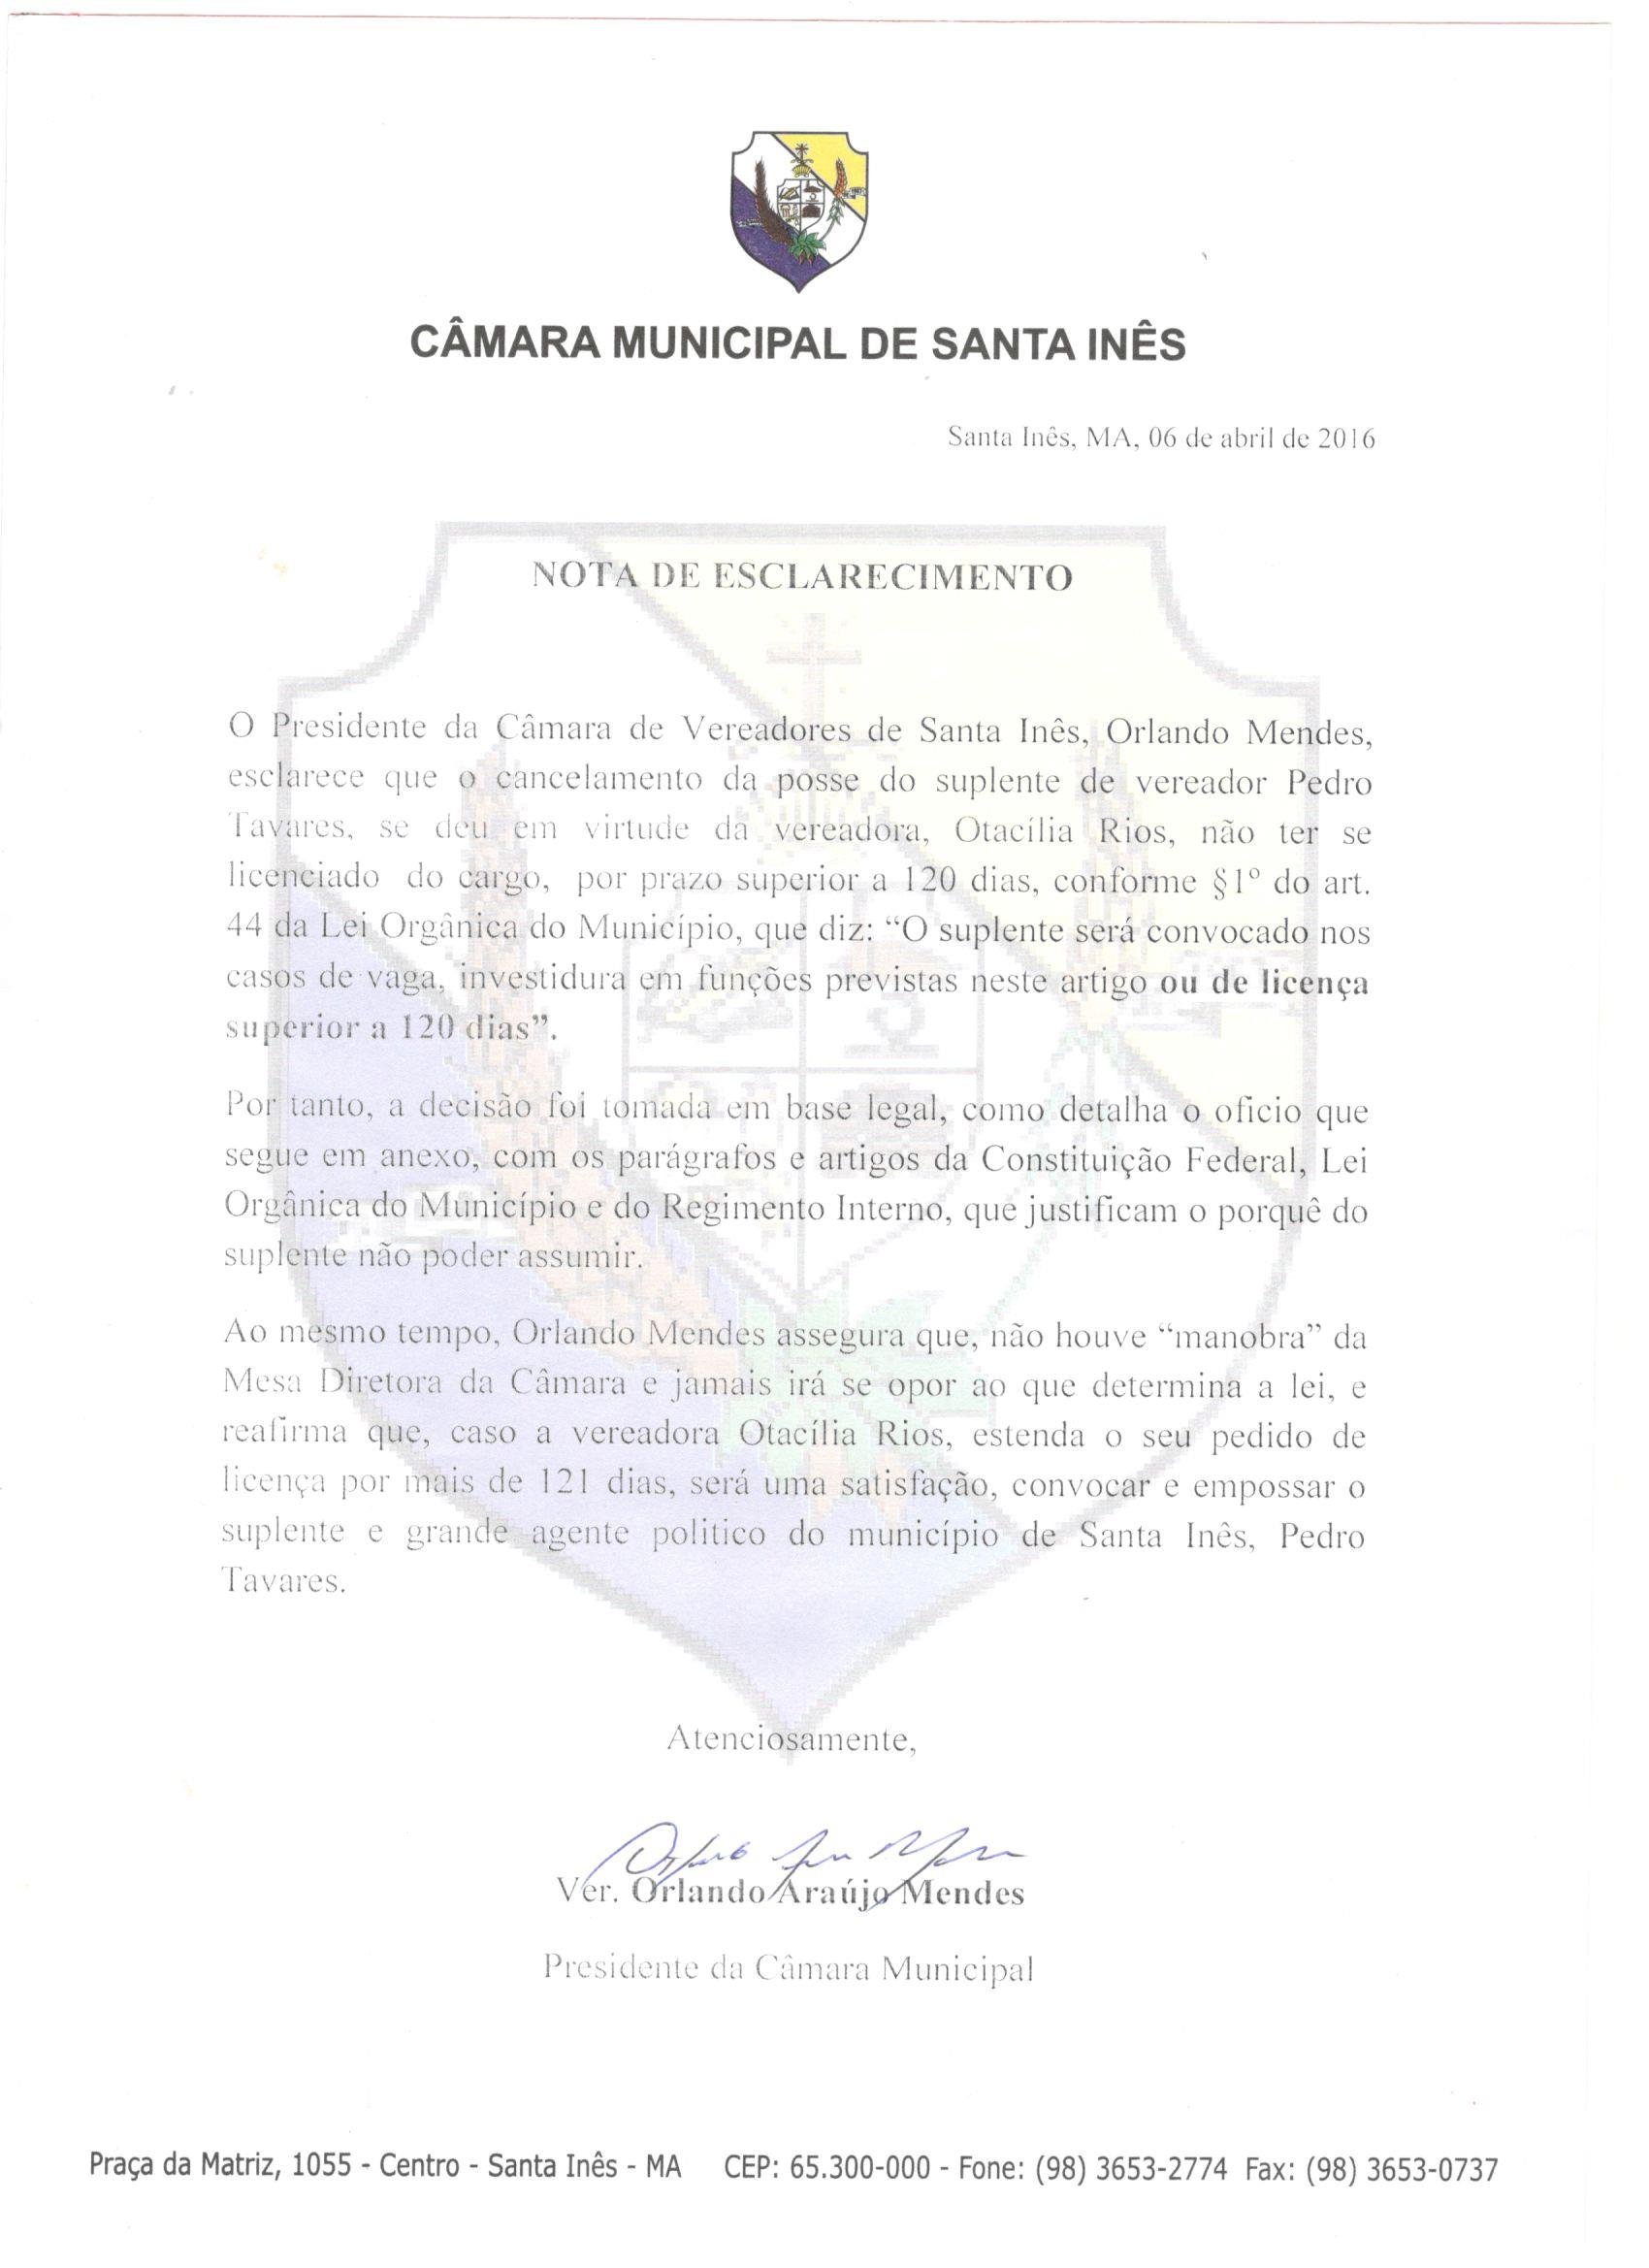 Presidente da Câmara Municipal de Santa Inês divulga nota  sobre cancelamento de posse de suplete